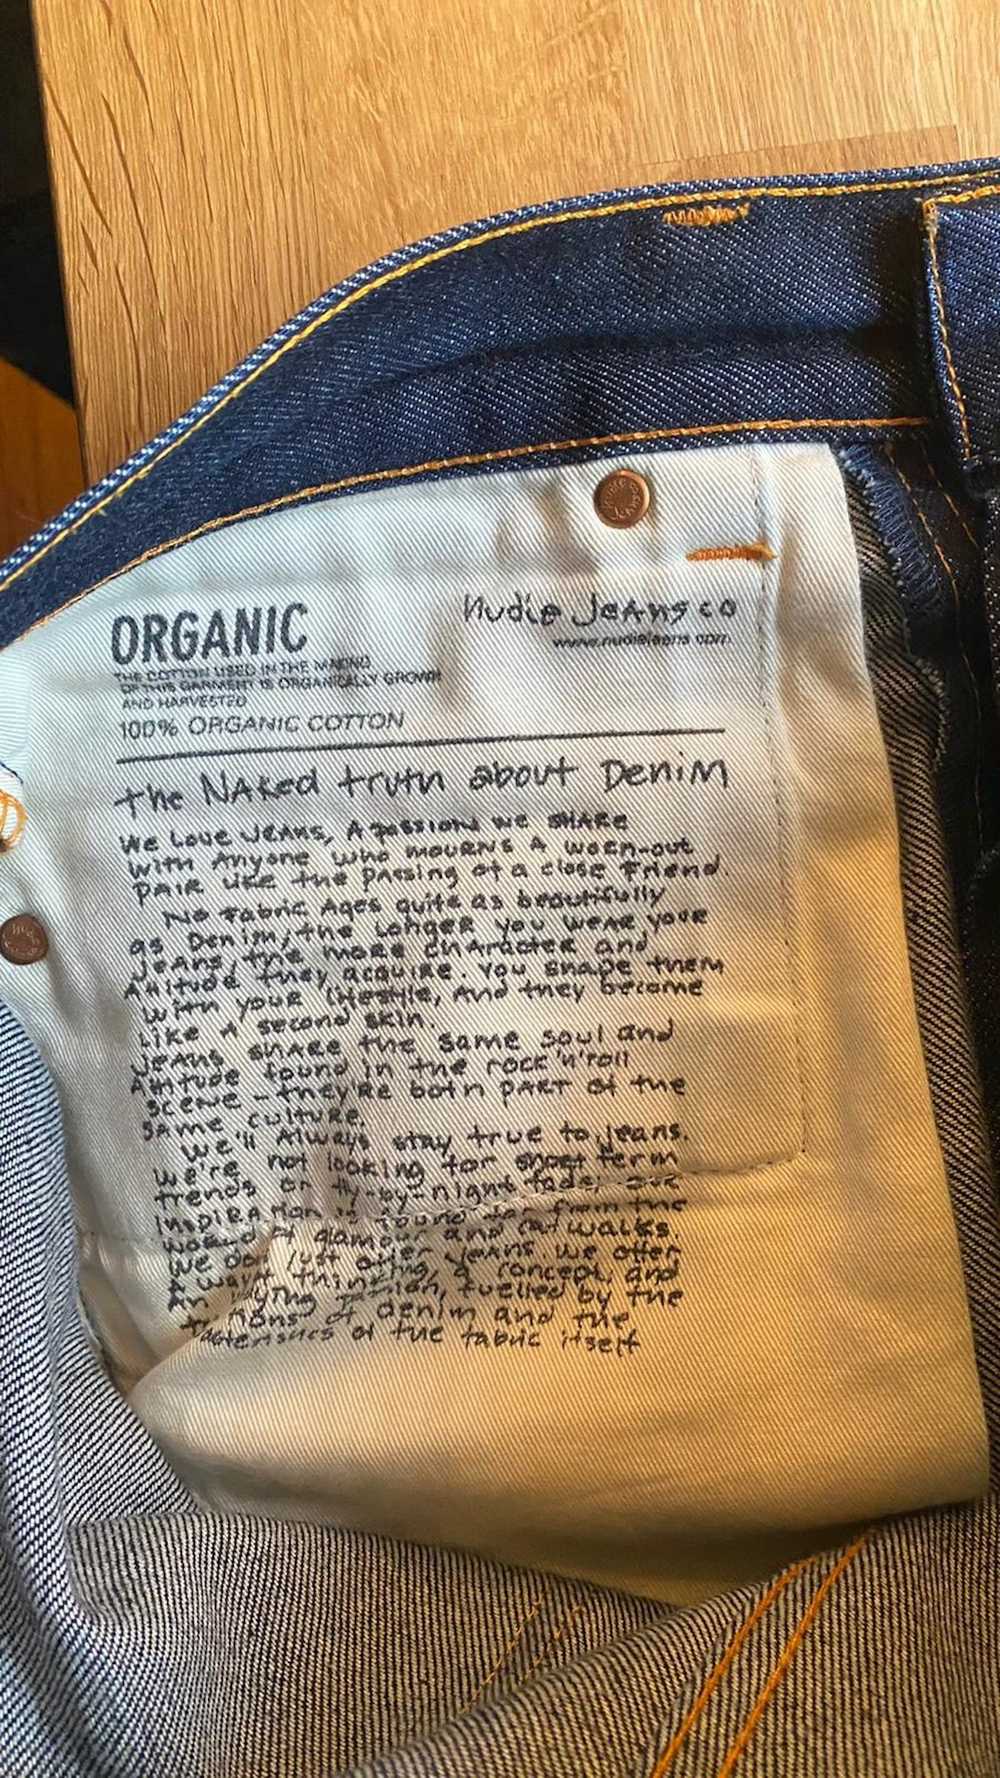 Nudie Jeans Lean Dean Dry Japan Selvage - 31W/30L - image 6